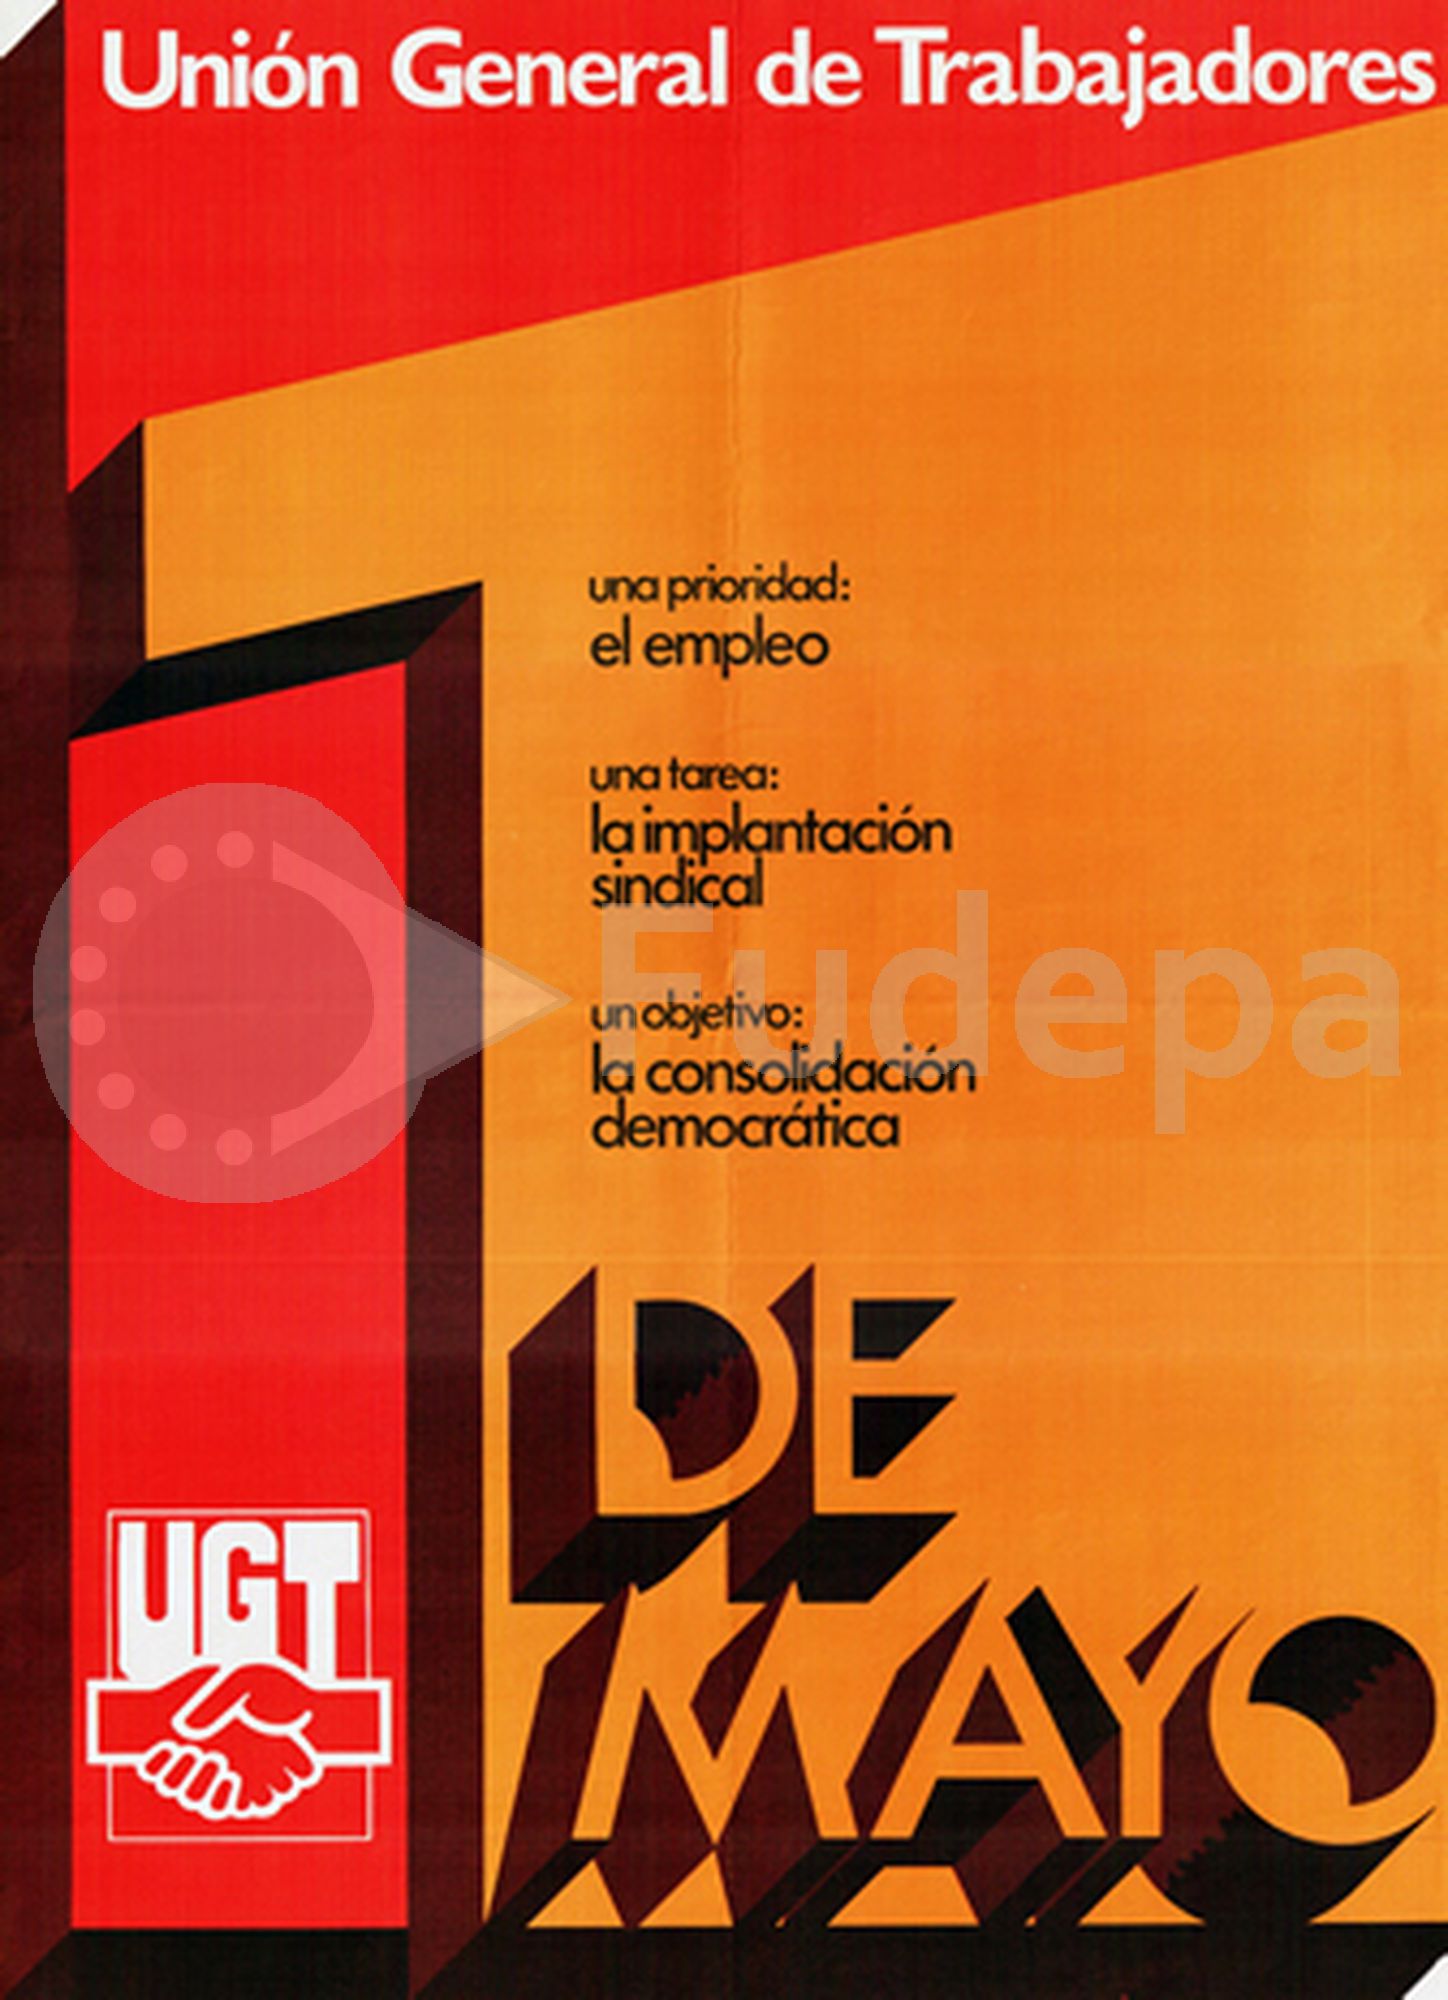 1981: Una prioridad: el empleo. Una tarea: la implantación sindical. Un objetivo: la consolidación democrática.